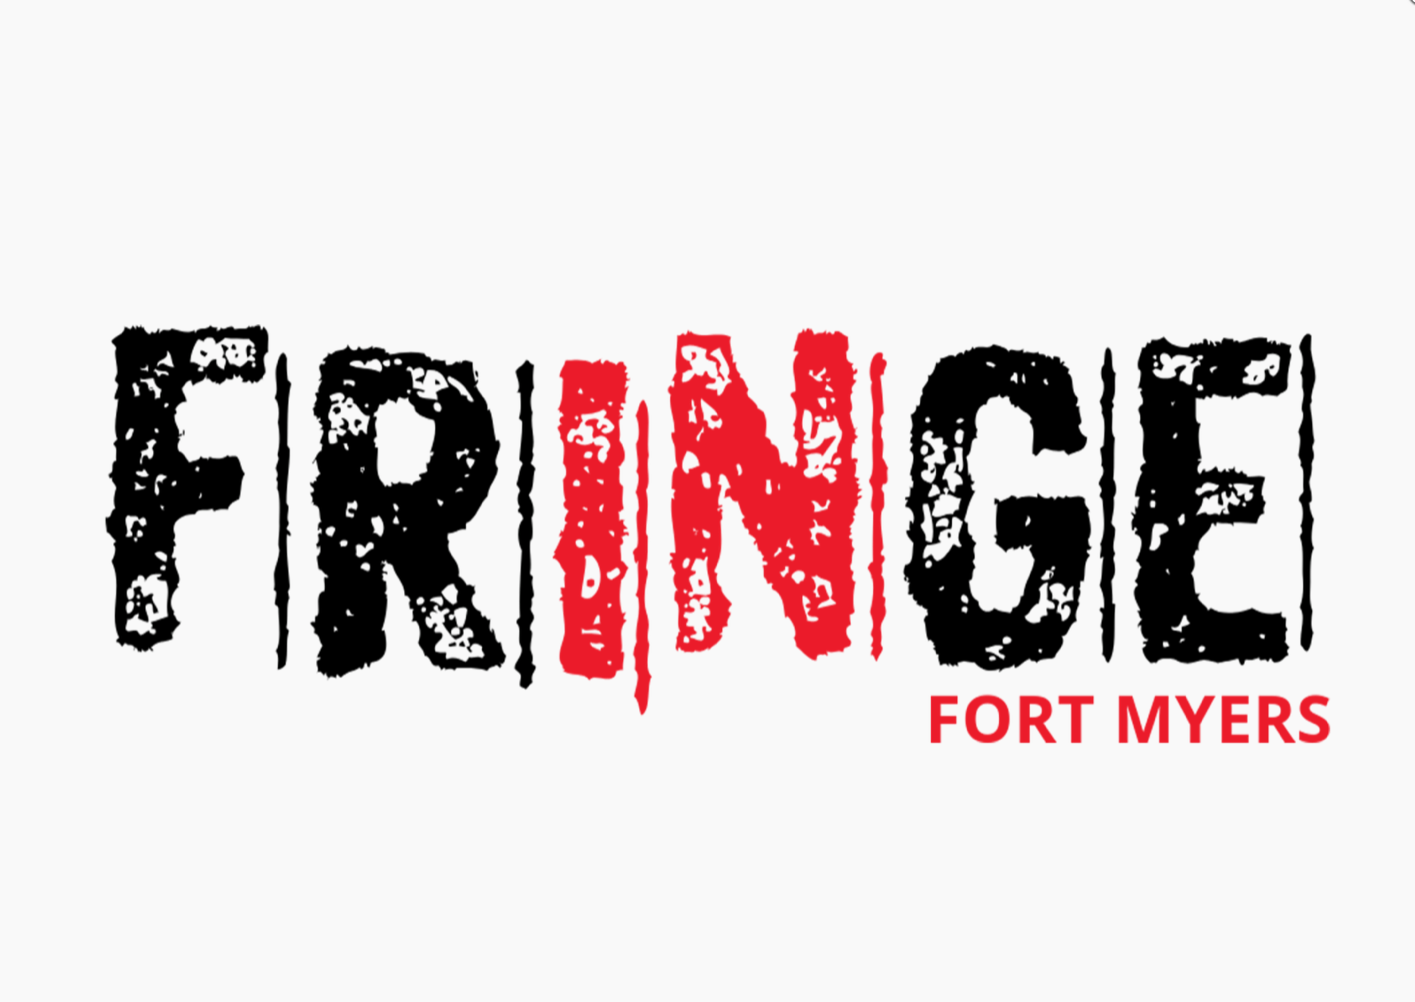 Fringe Festival